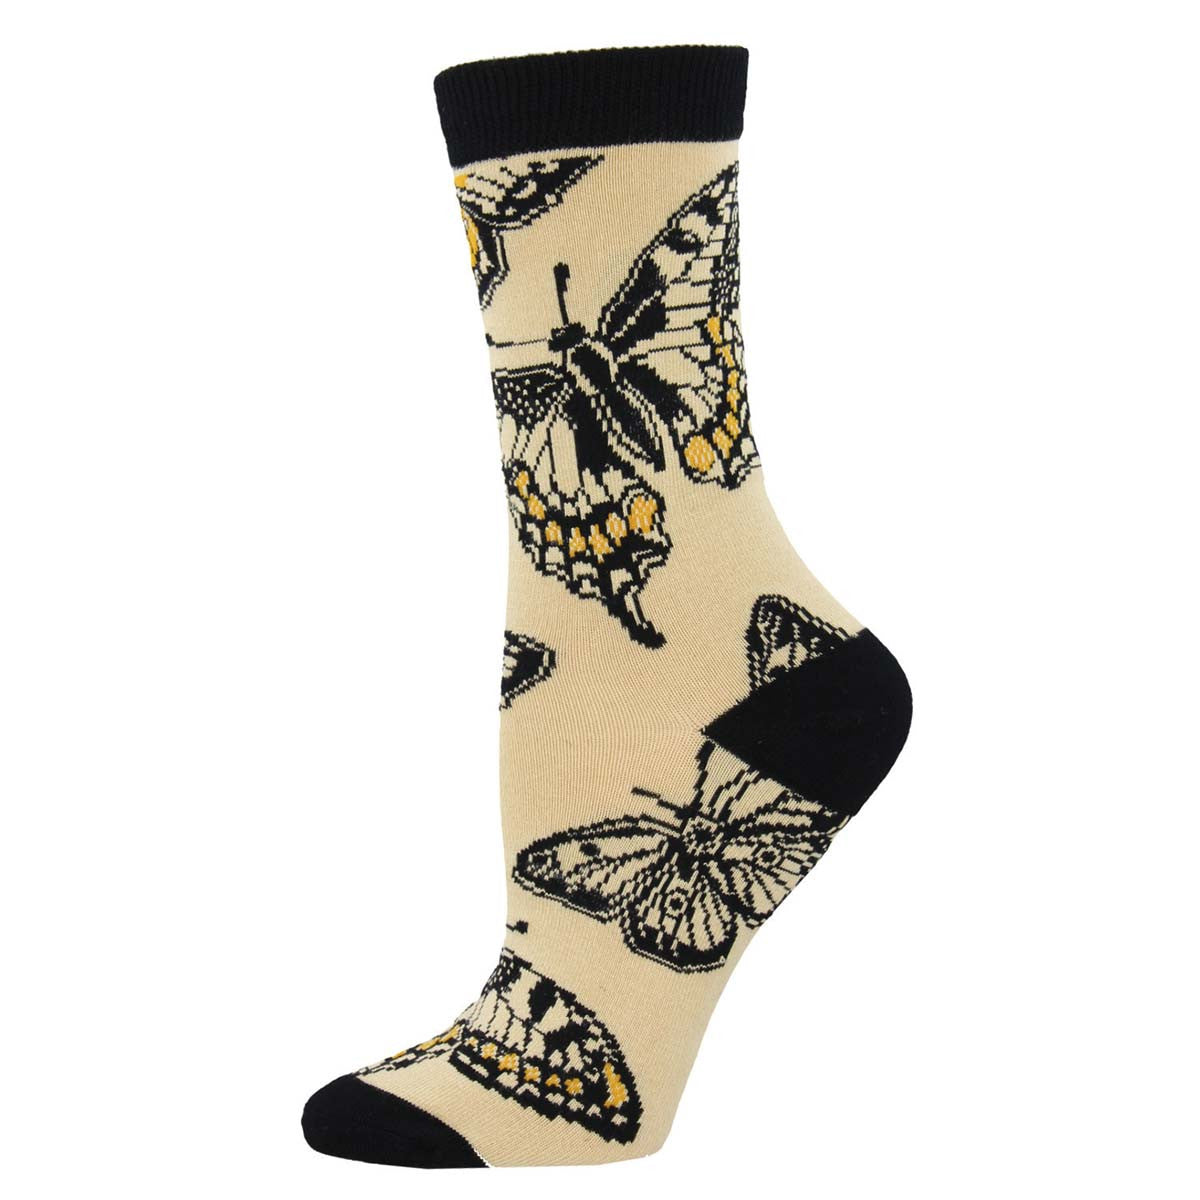 Women's/Small Socks - Butterflies